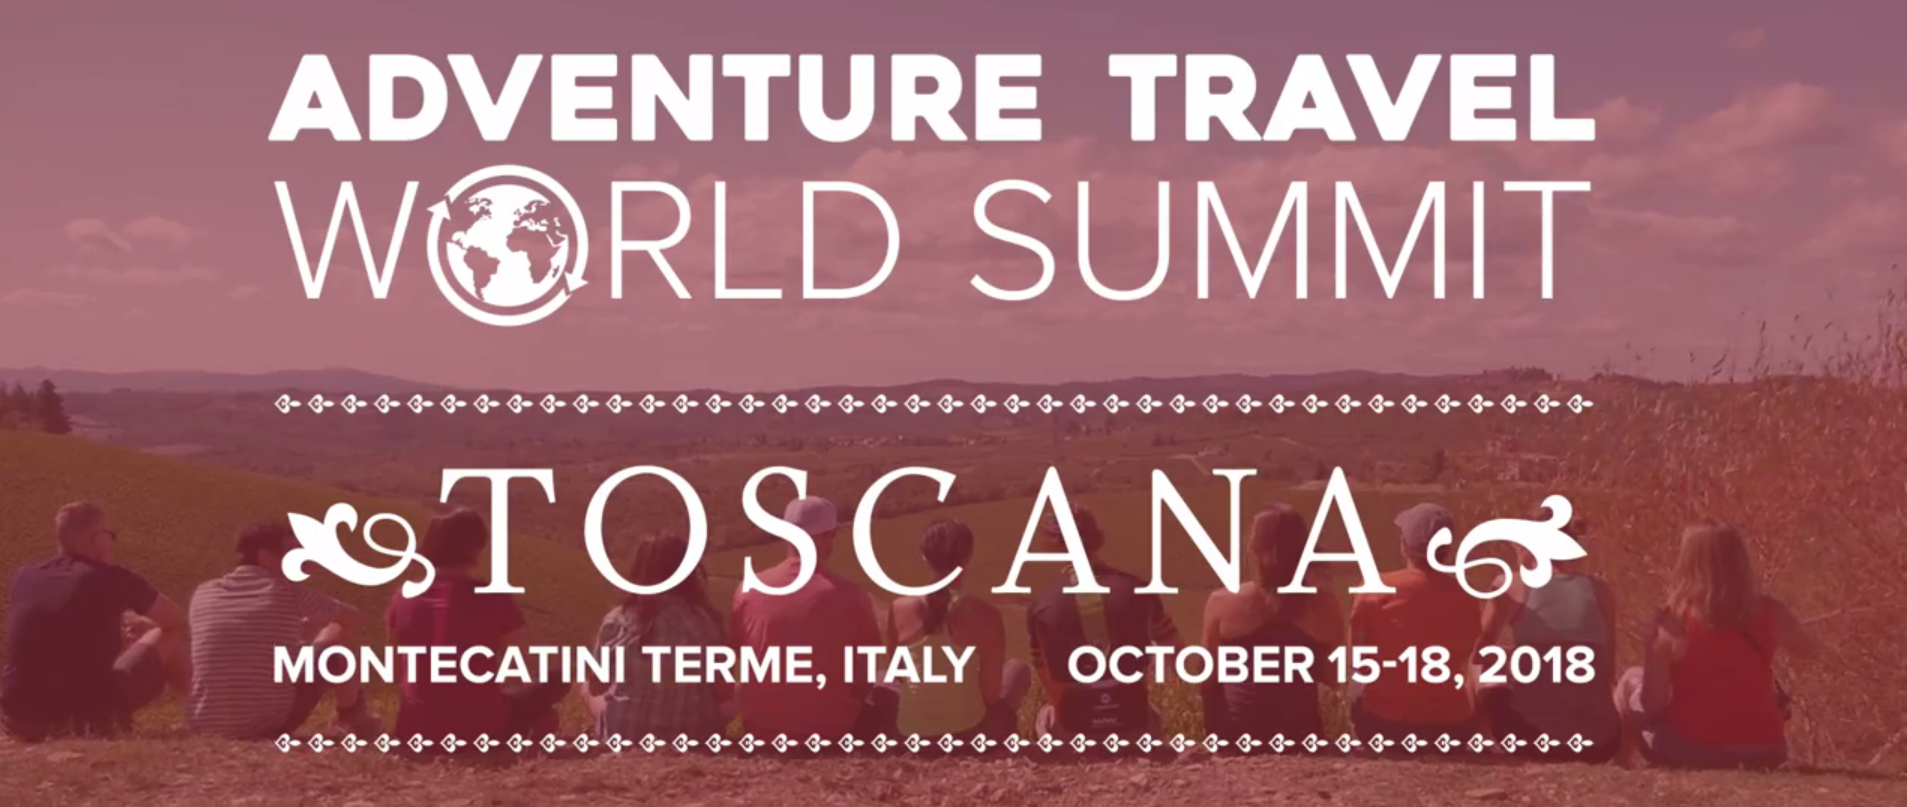 Turismo Avventura: in Toscana il Summit Mondiale 2018